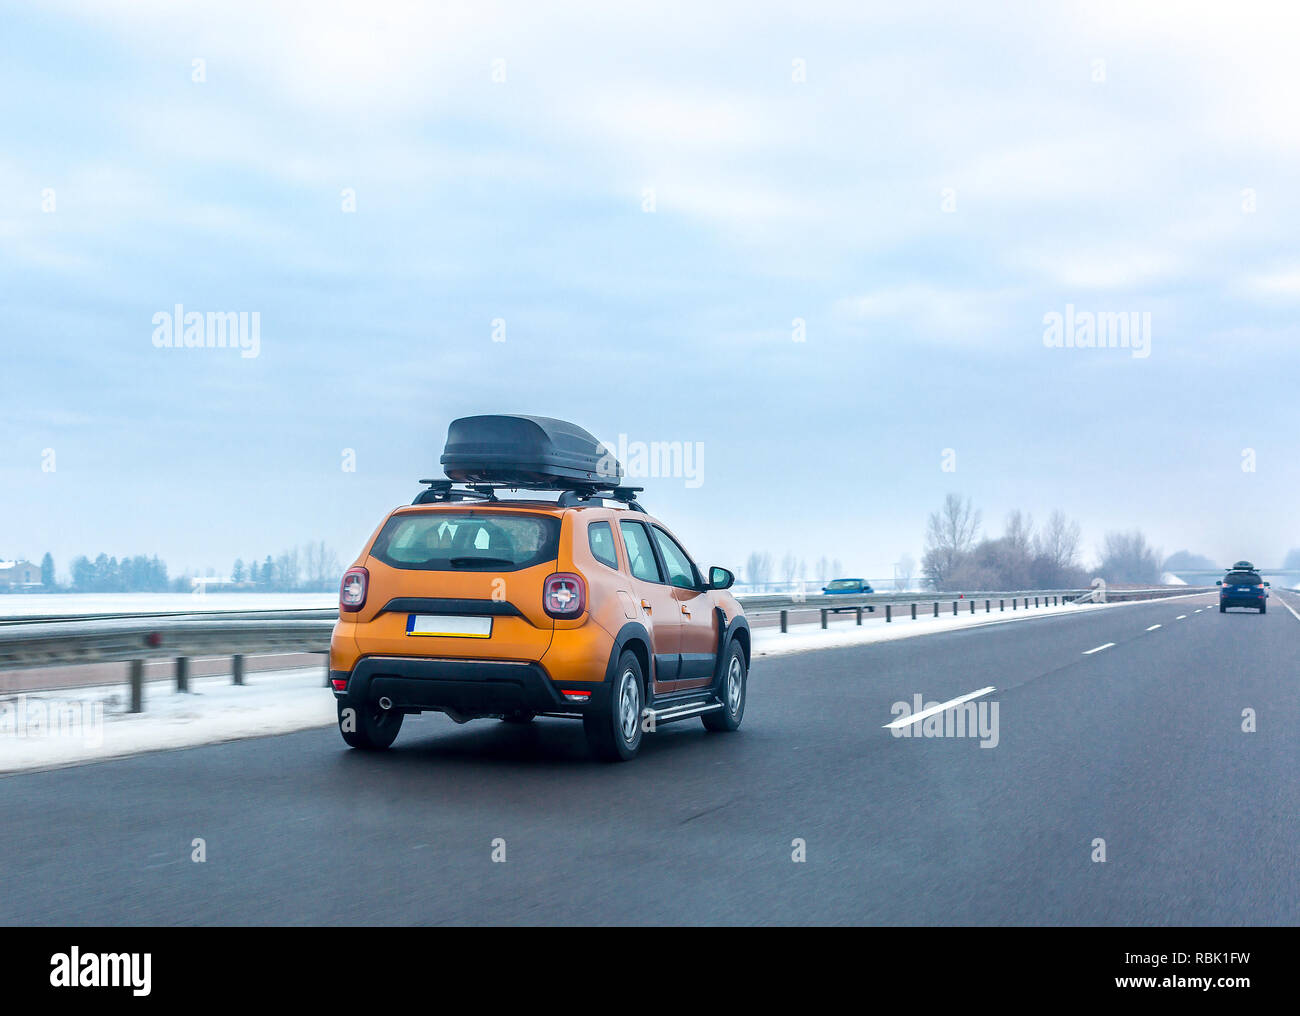 Voiture Orange avec toit assurance fort sur la route en hiver. Voyages en famille concept Banque D'Images